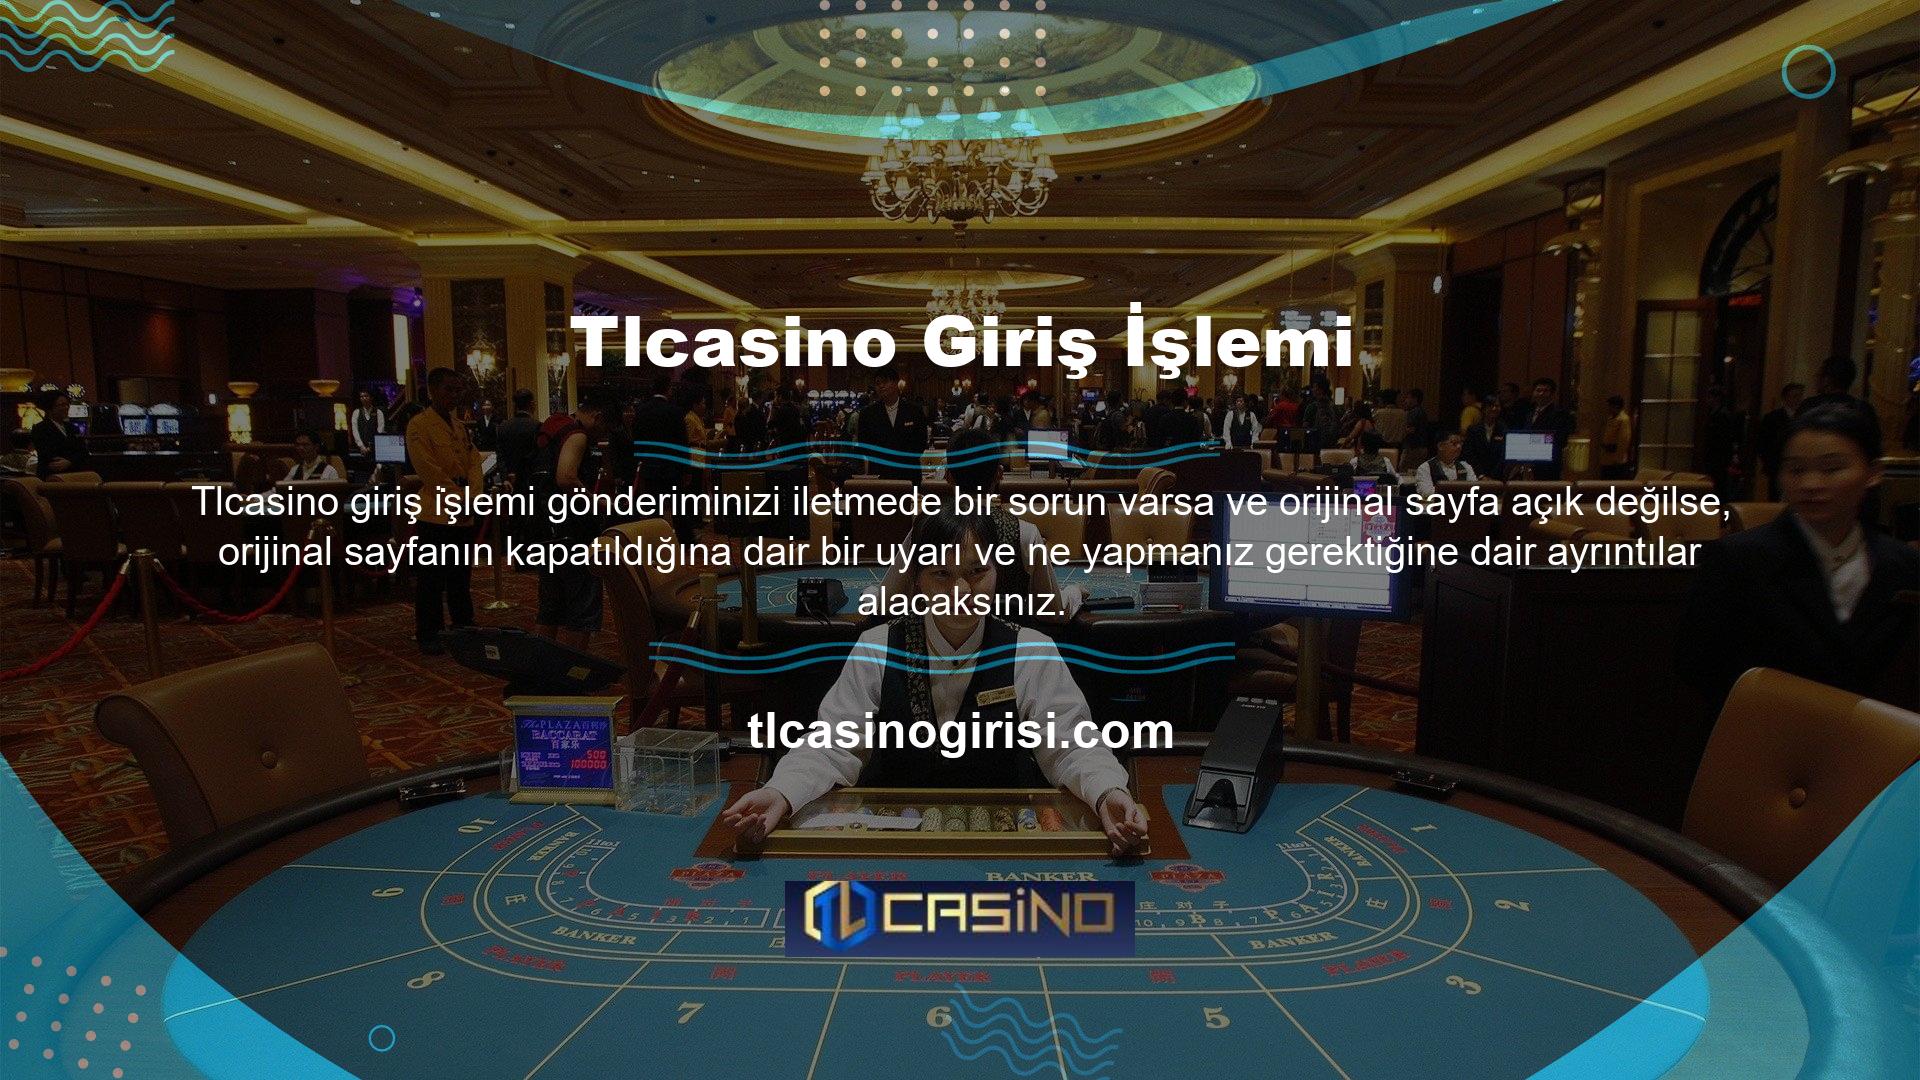 Türk yasalarına göre Tlcasino bahis sitelerini engelleme kararı aldık